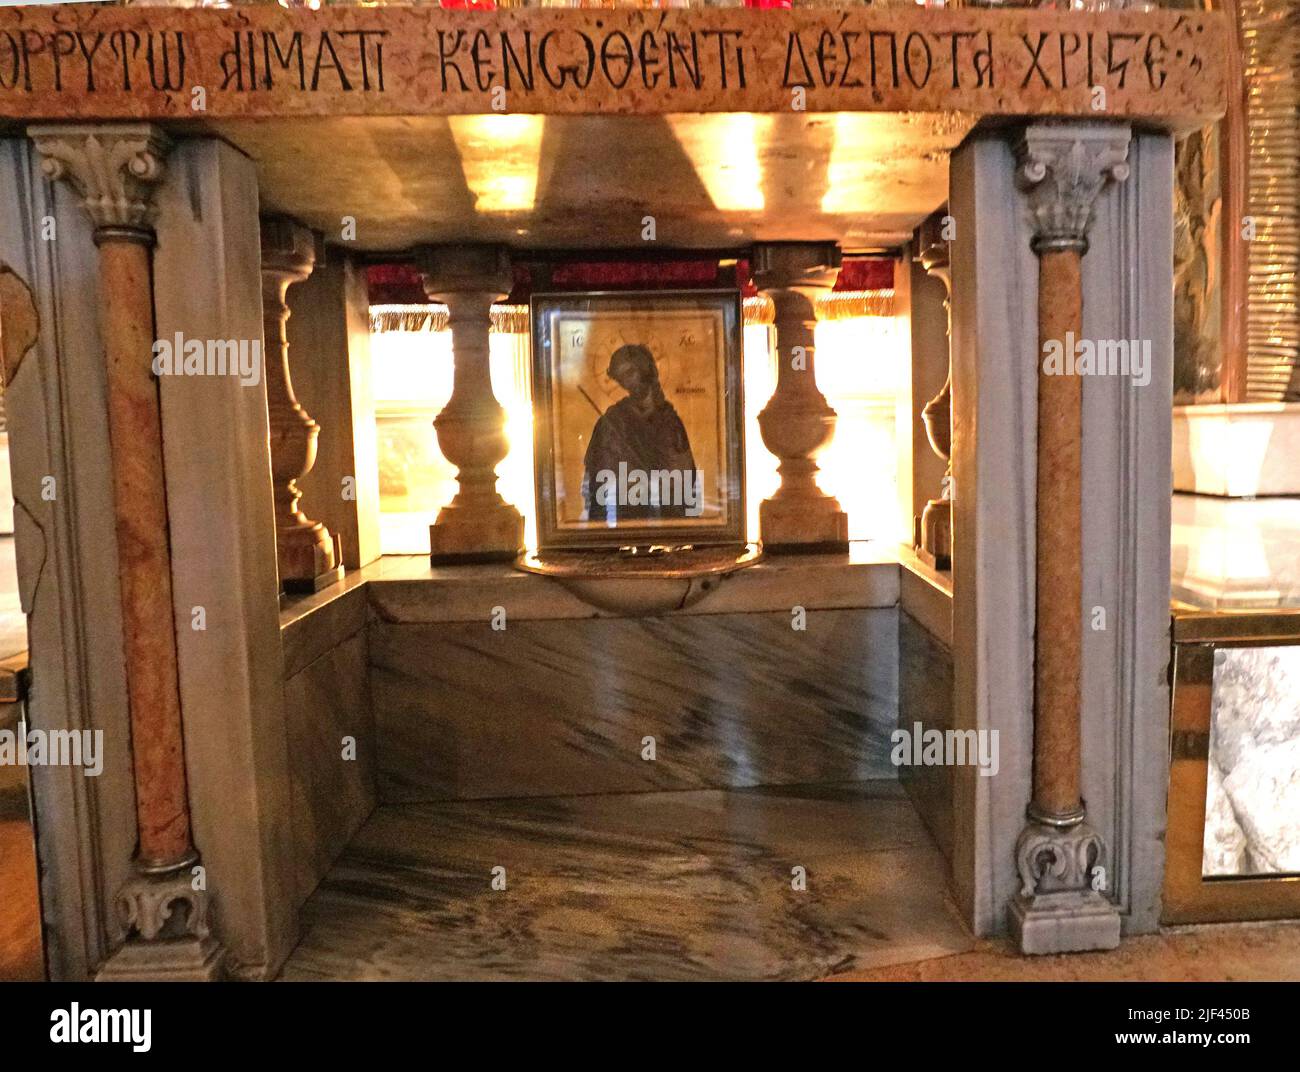 L'altare della Crocifissione presso la Chiesa del Santo Sepolcro a Gerusalemme. La Rocca del Calvario è vista racchiusa in vetro. Fotografia di Dennis Br Foto Stock